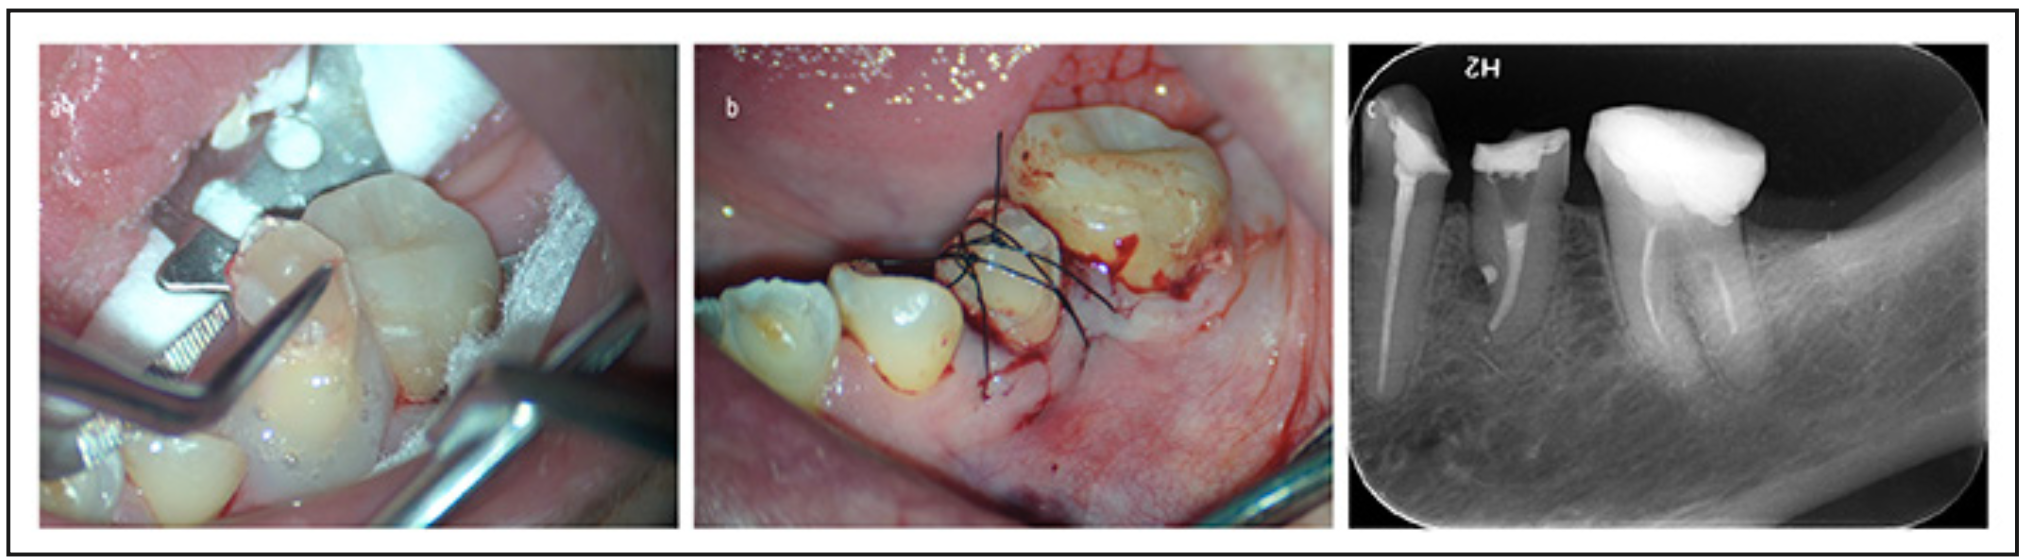 Figura 4. A): reposicionamiento del diente en el alveolo. B): estabilización del diente en el alveolo con sutura suspensoria. C): control radiográfico post operatorio.